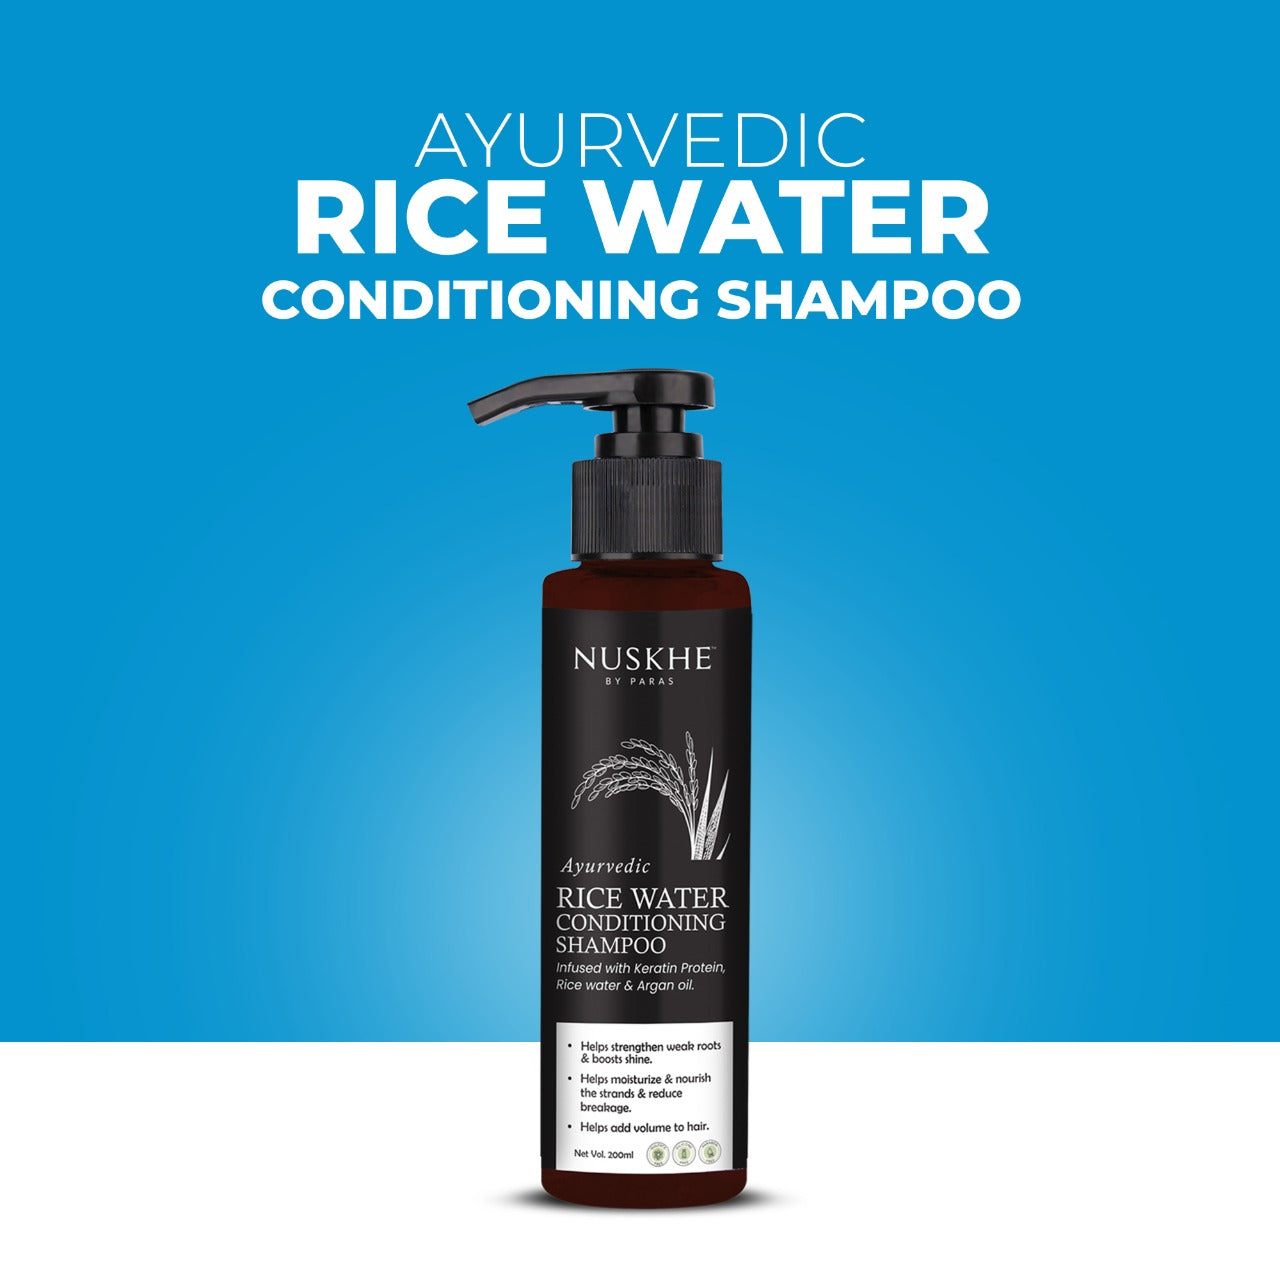 Ayurvedic Rice Water Conditioning Shampoo